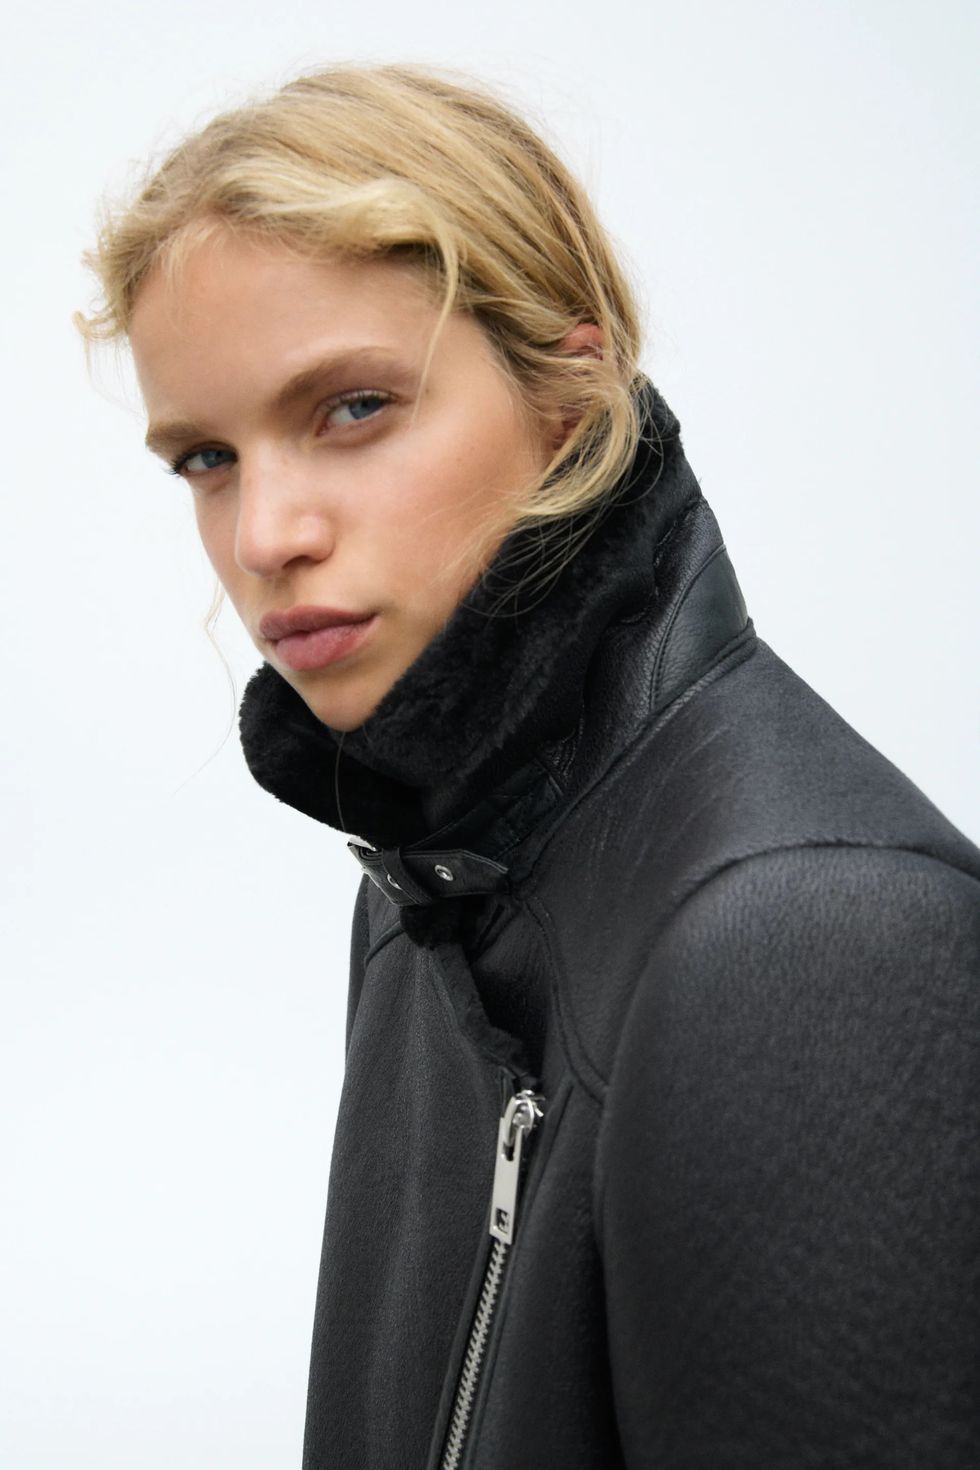 Zara saca su abrigo chaquetón doble faz más vendido de todos los otoños